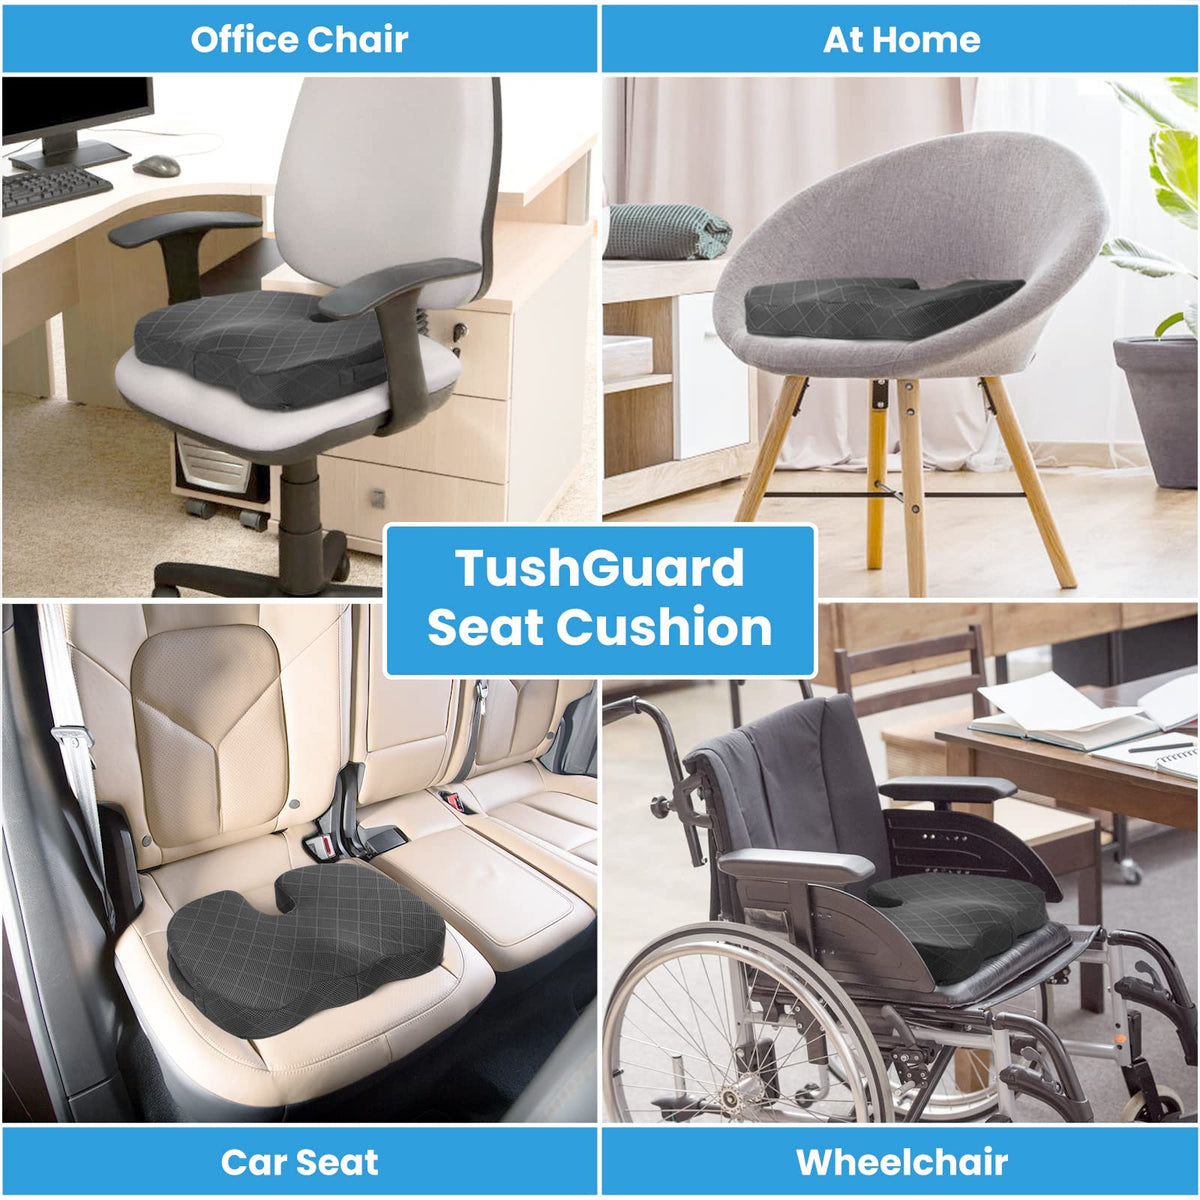 Seat Cushion - Memory Foam Cushion for Office Chair, Car Seat, Airplane